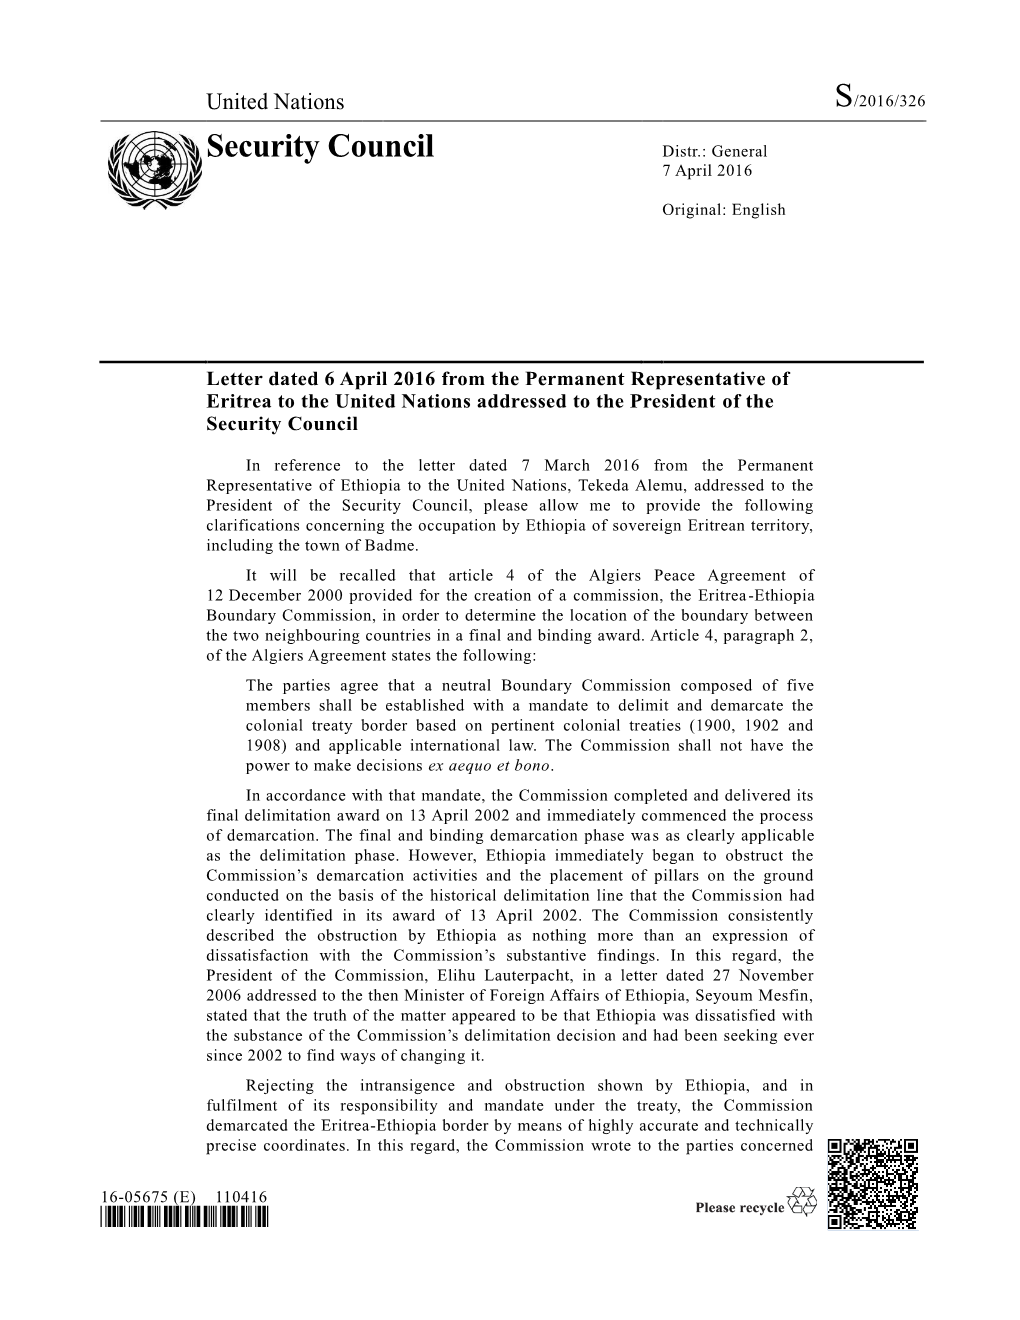 Security Council Distr.: General 7 April 2016